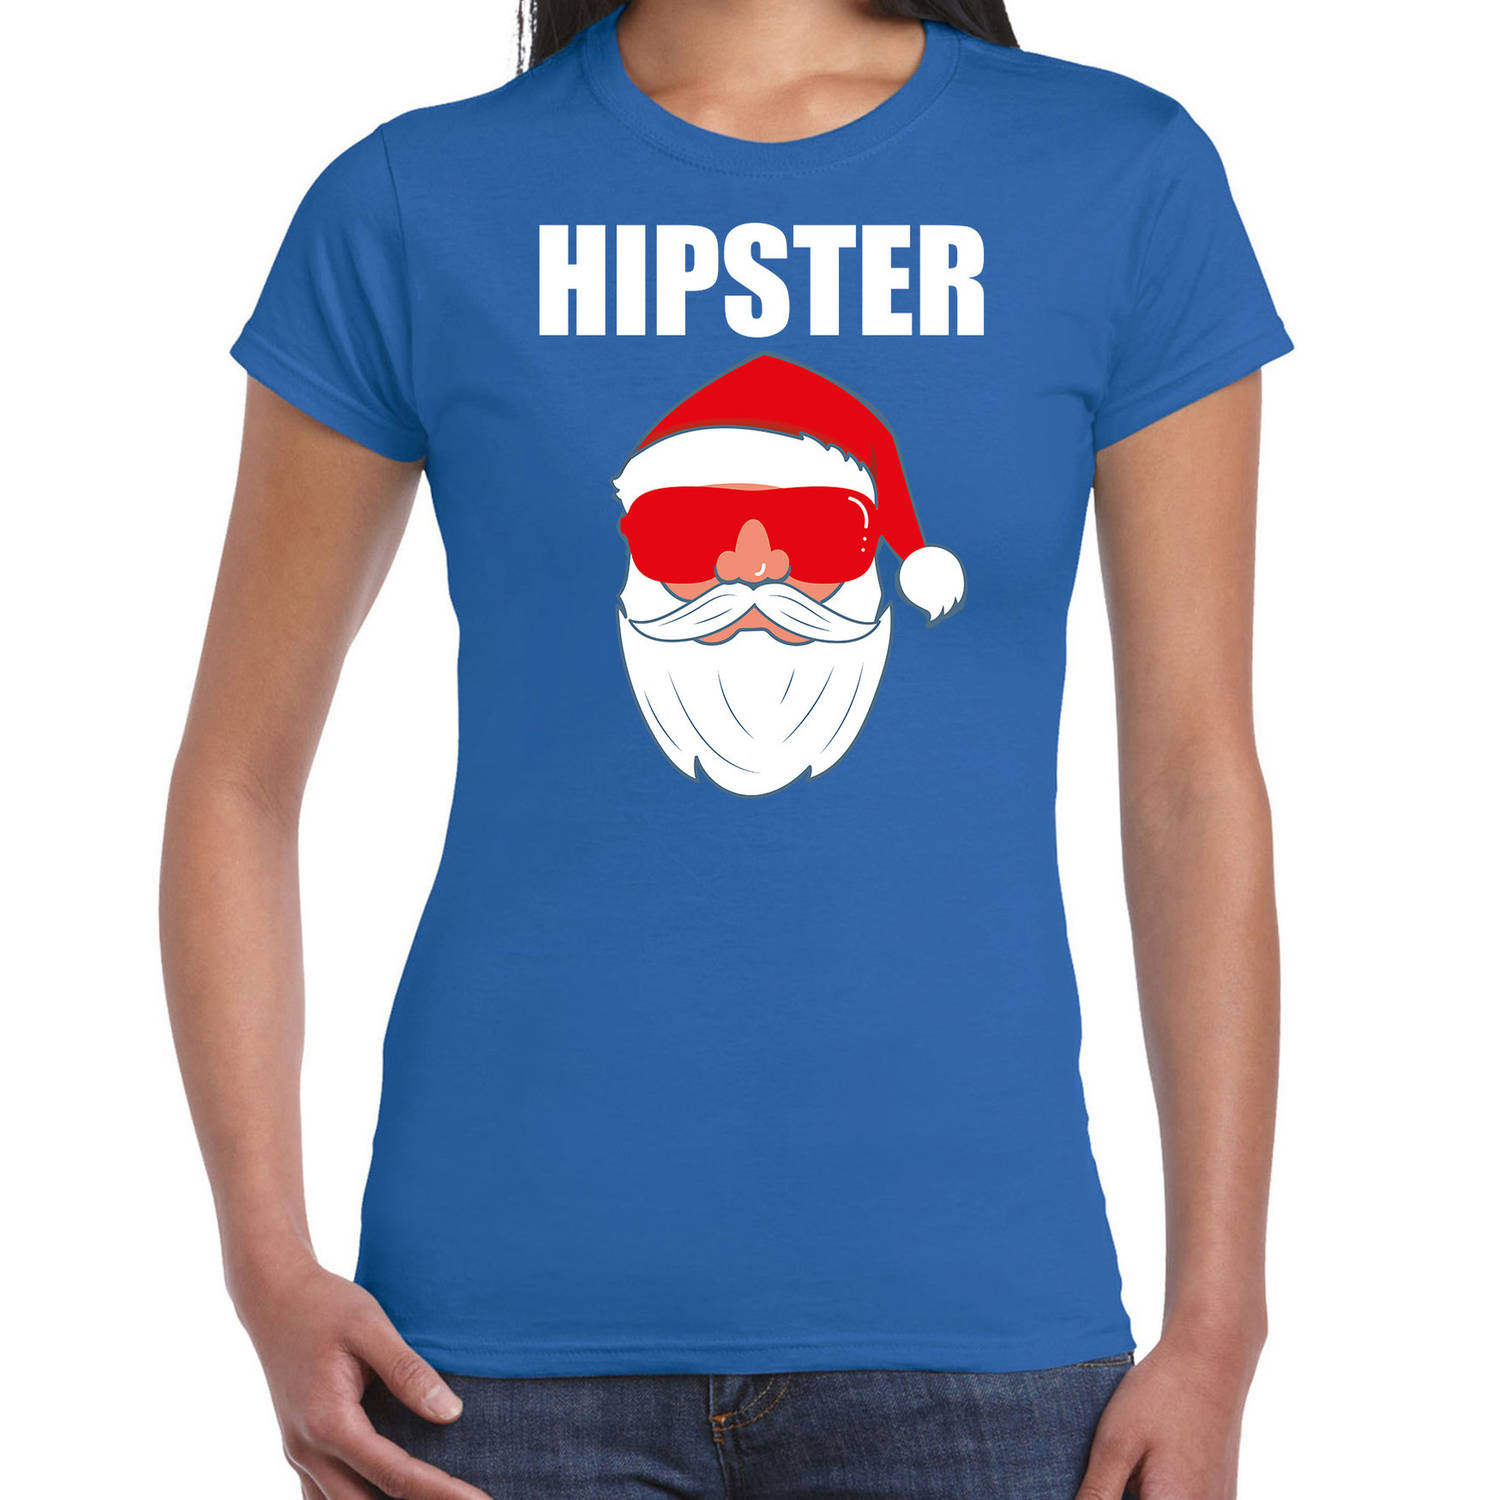 Blauw Kerstshirt / Kerstkleding Hipster voor dames met Kerstman met zonnebril XL - kerst t-shirts